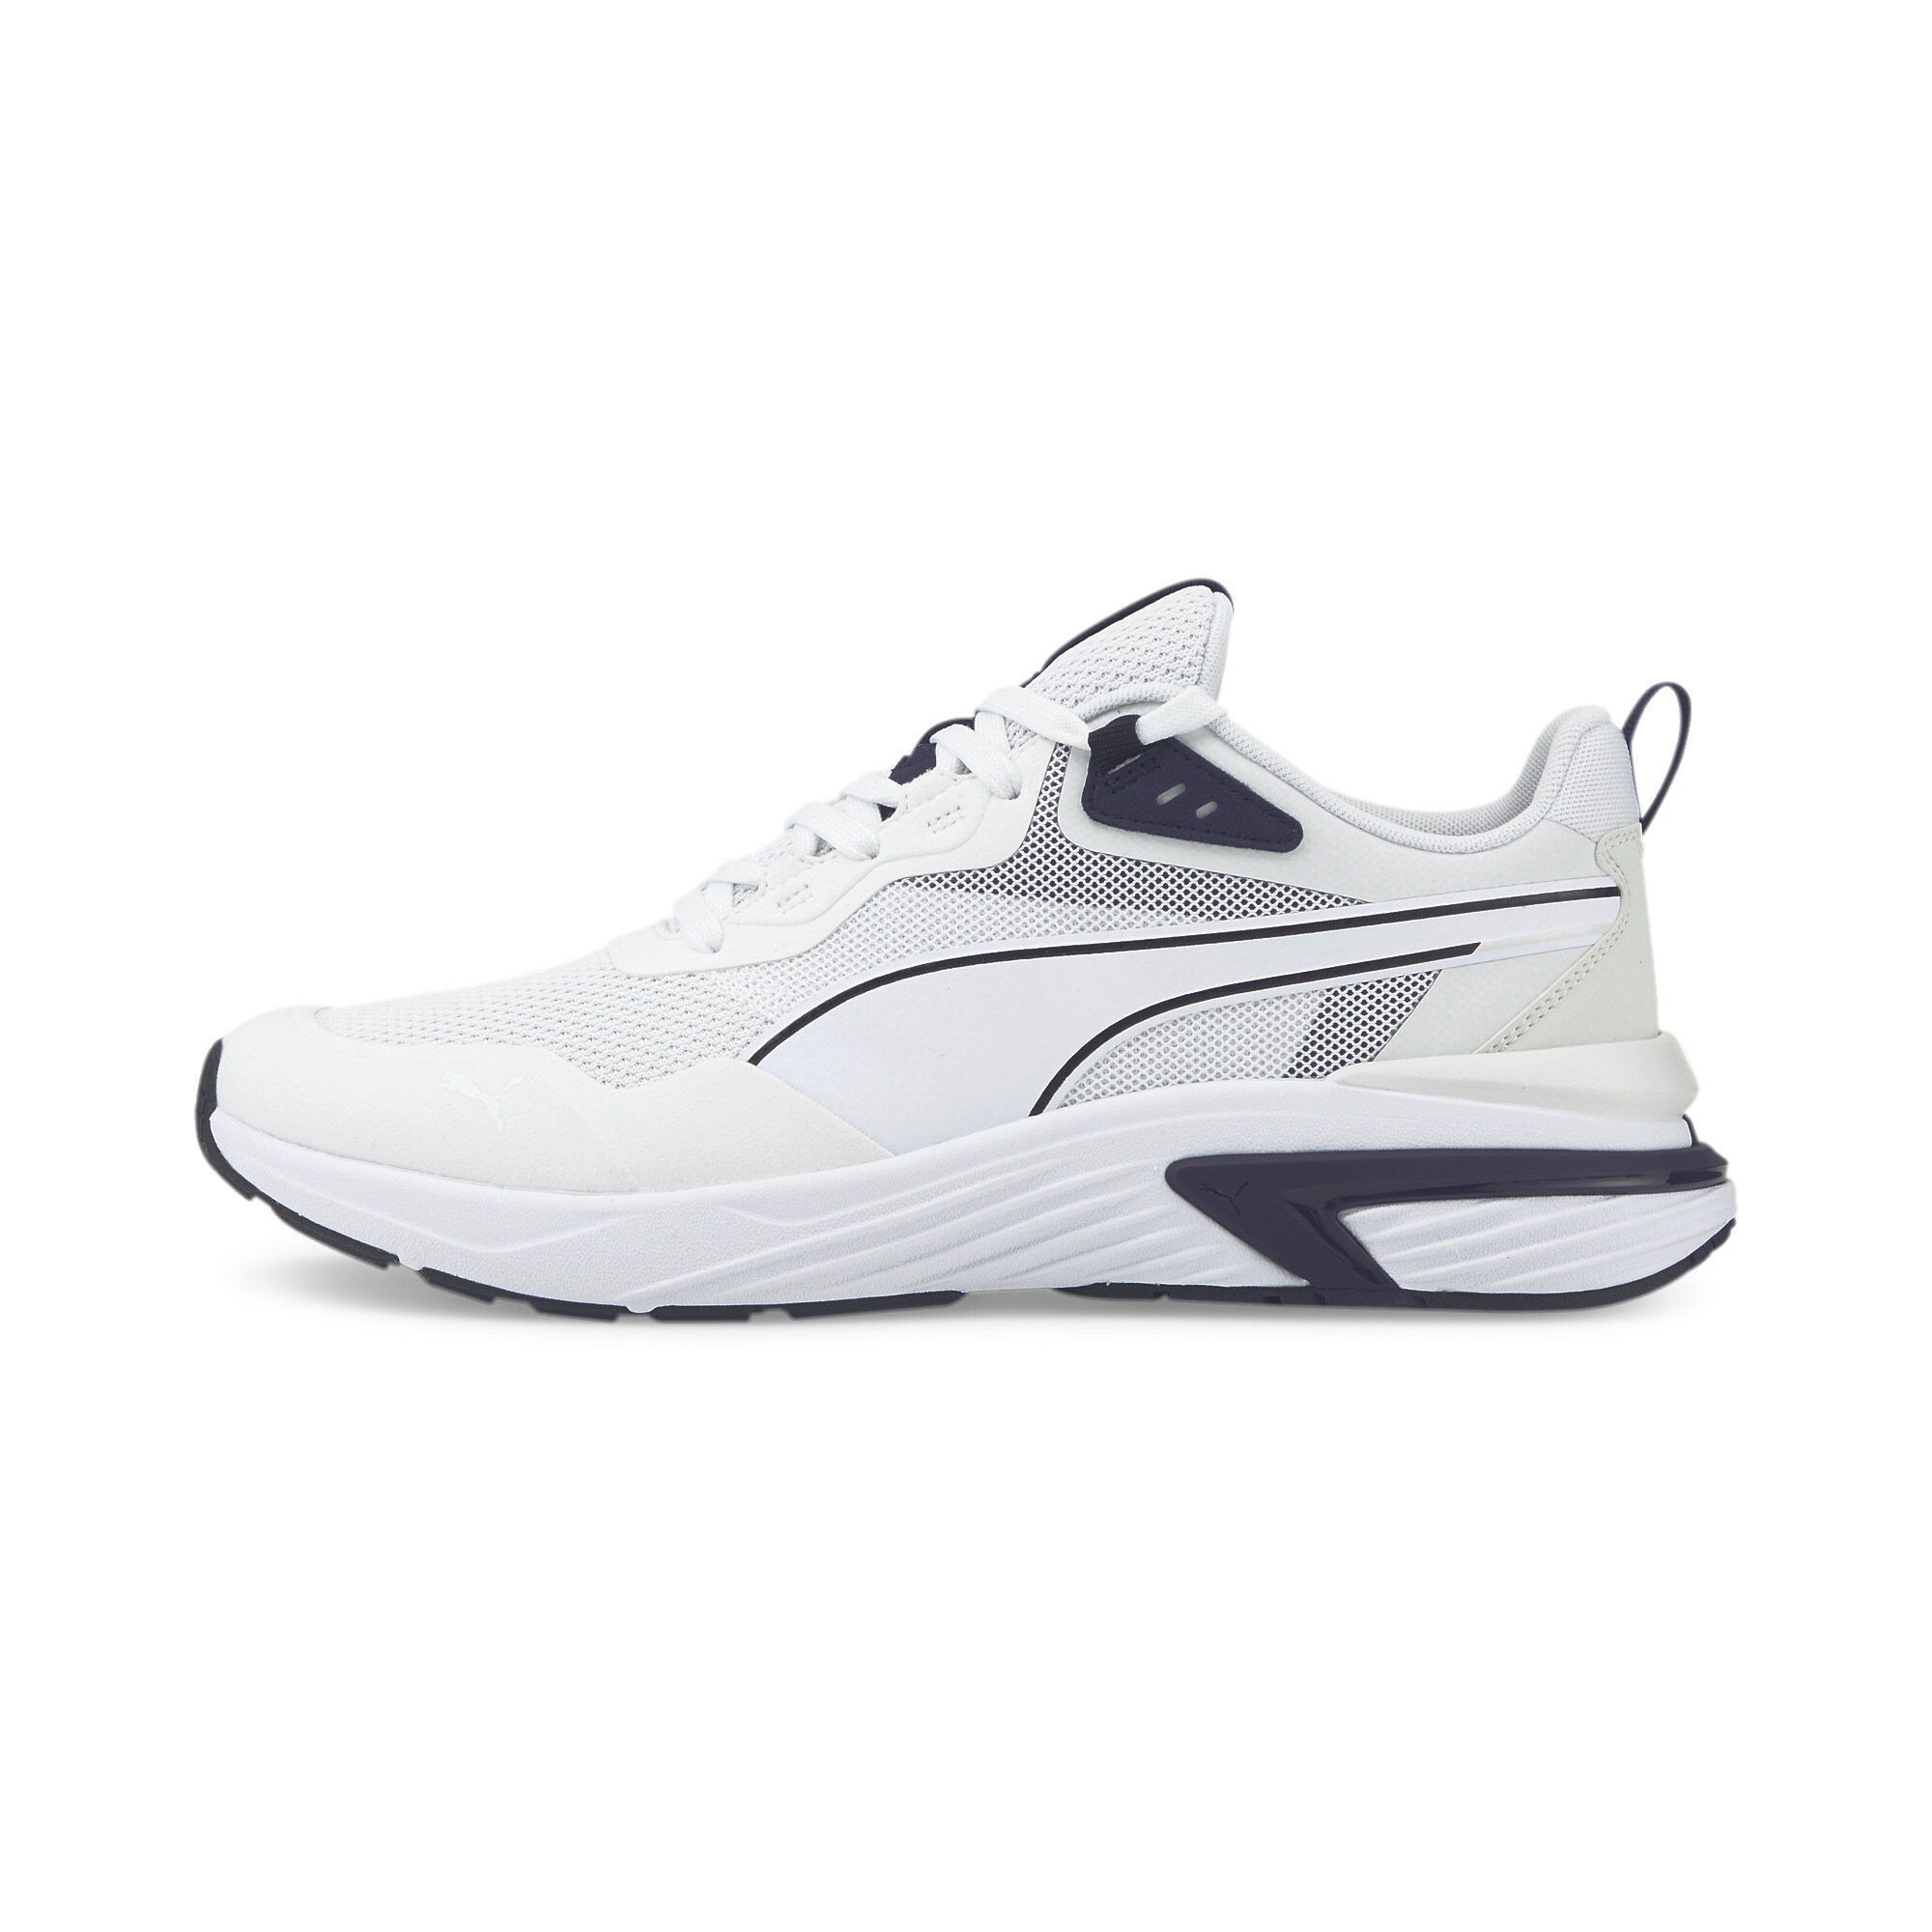 puma shoes for men white colour